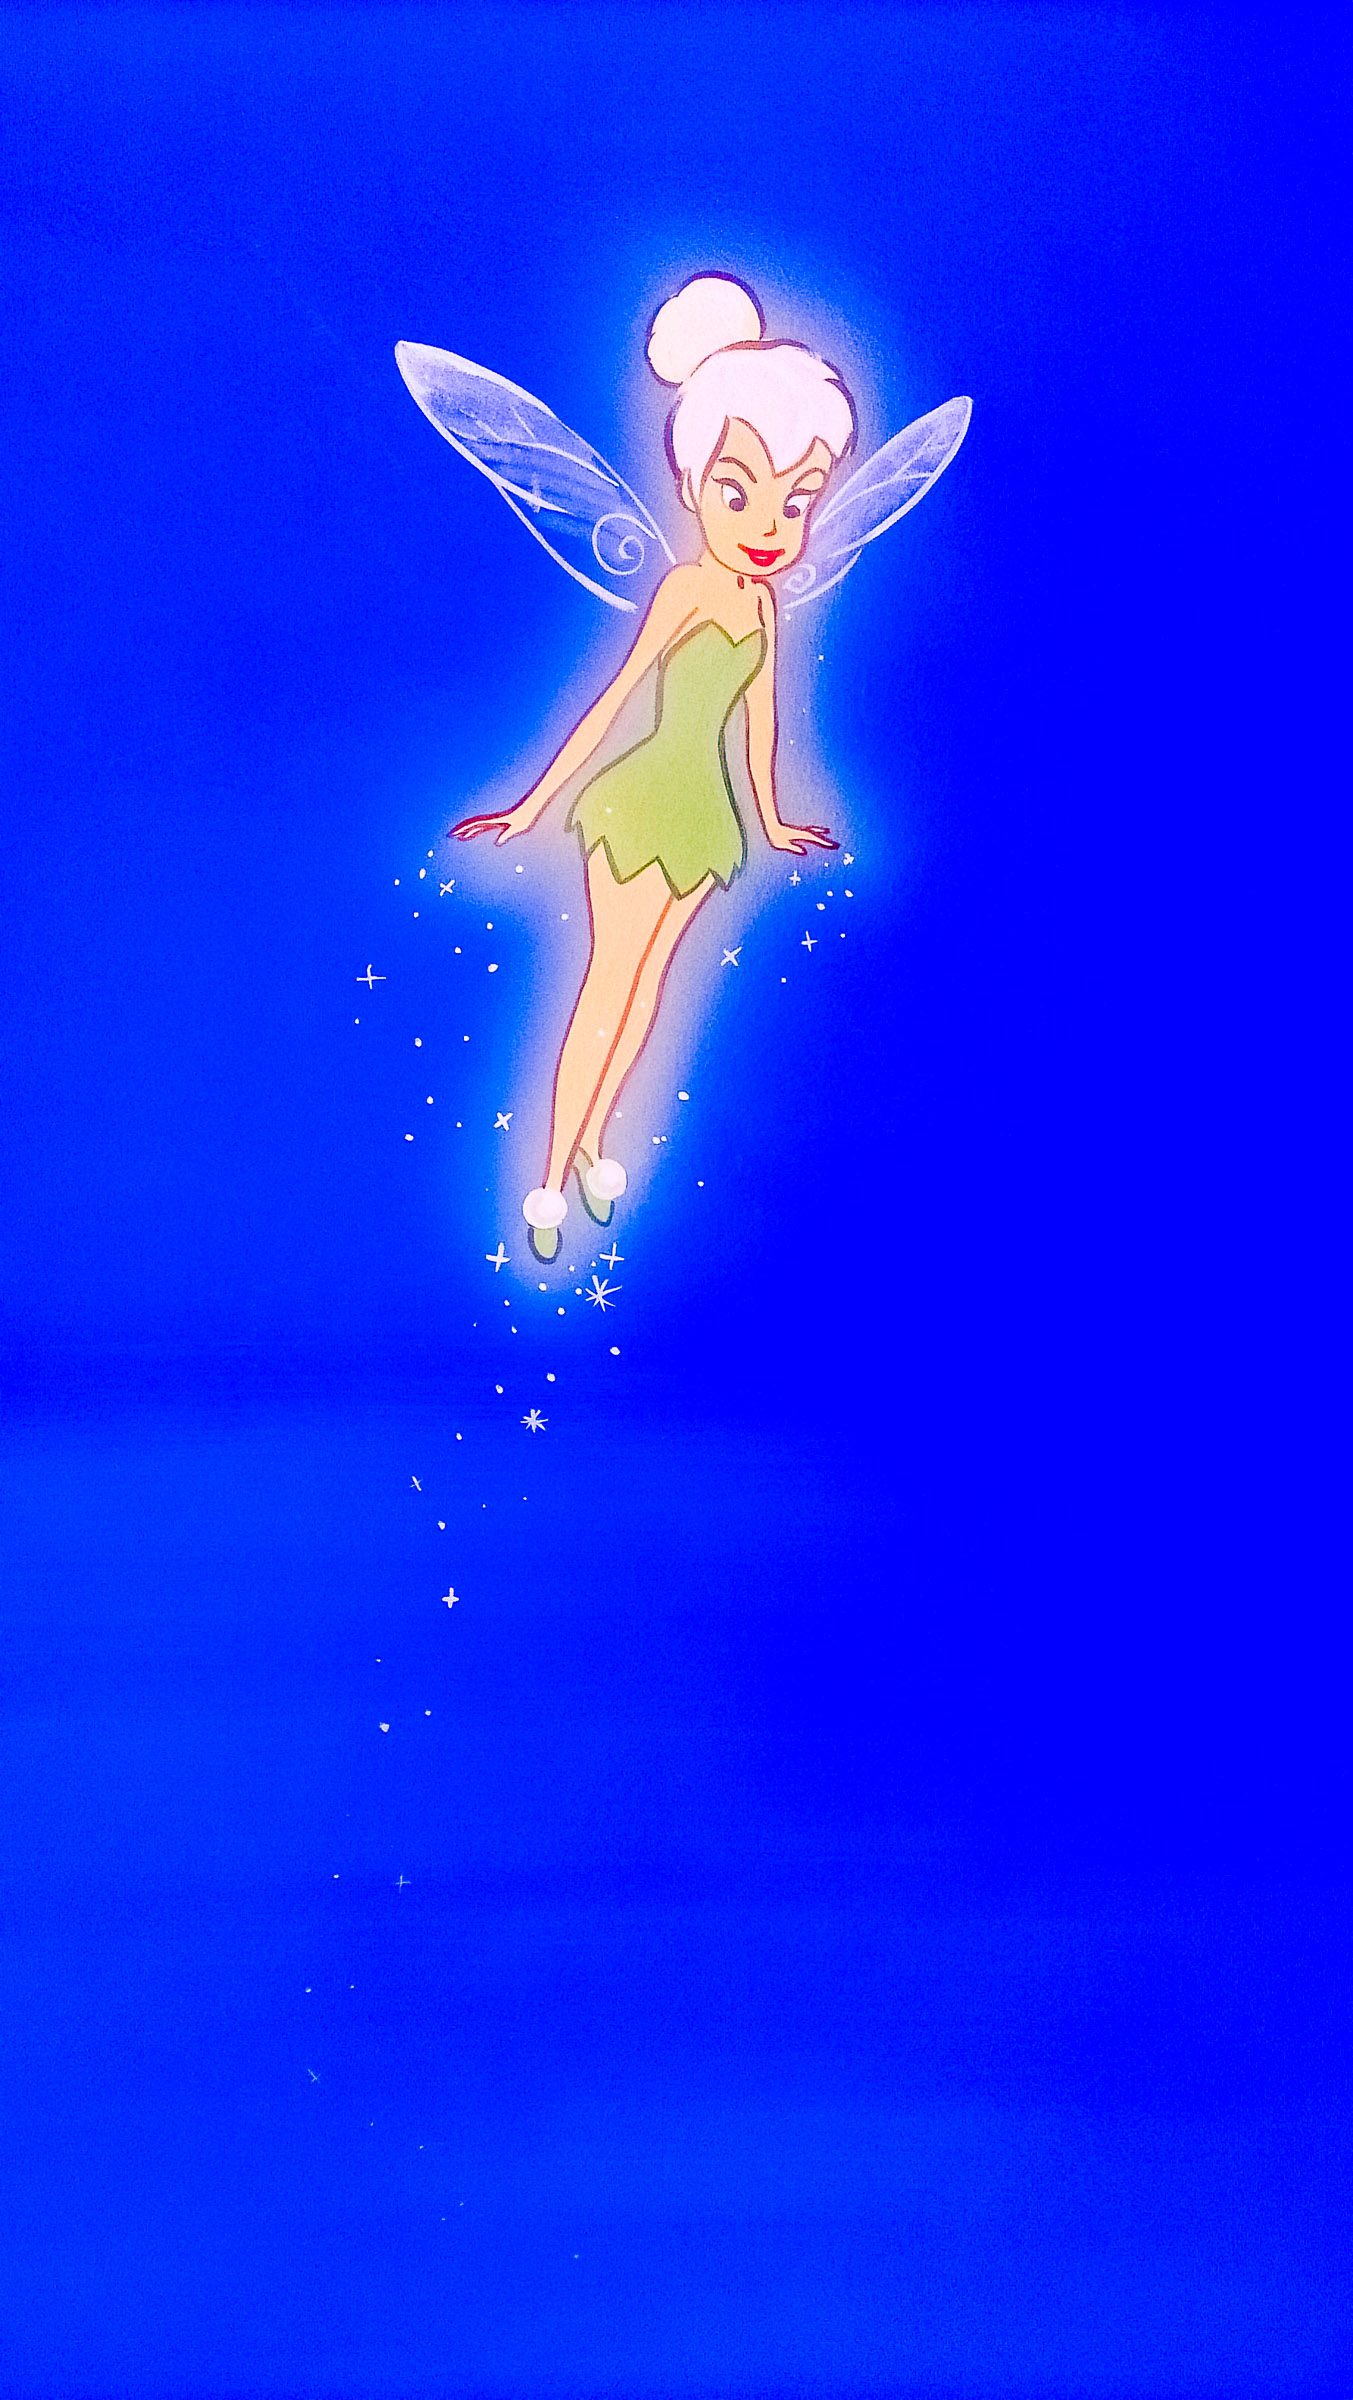 Tinkerbell glowing in this corner of the Disney nursery mural